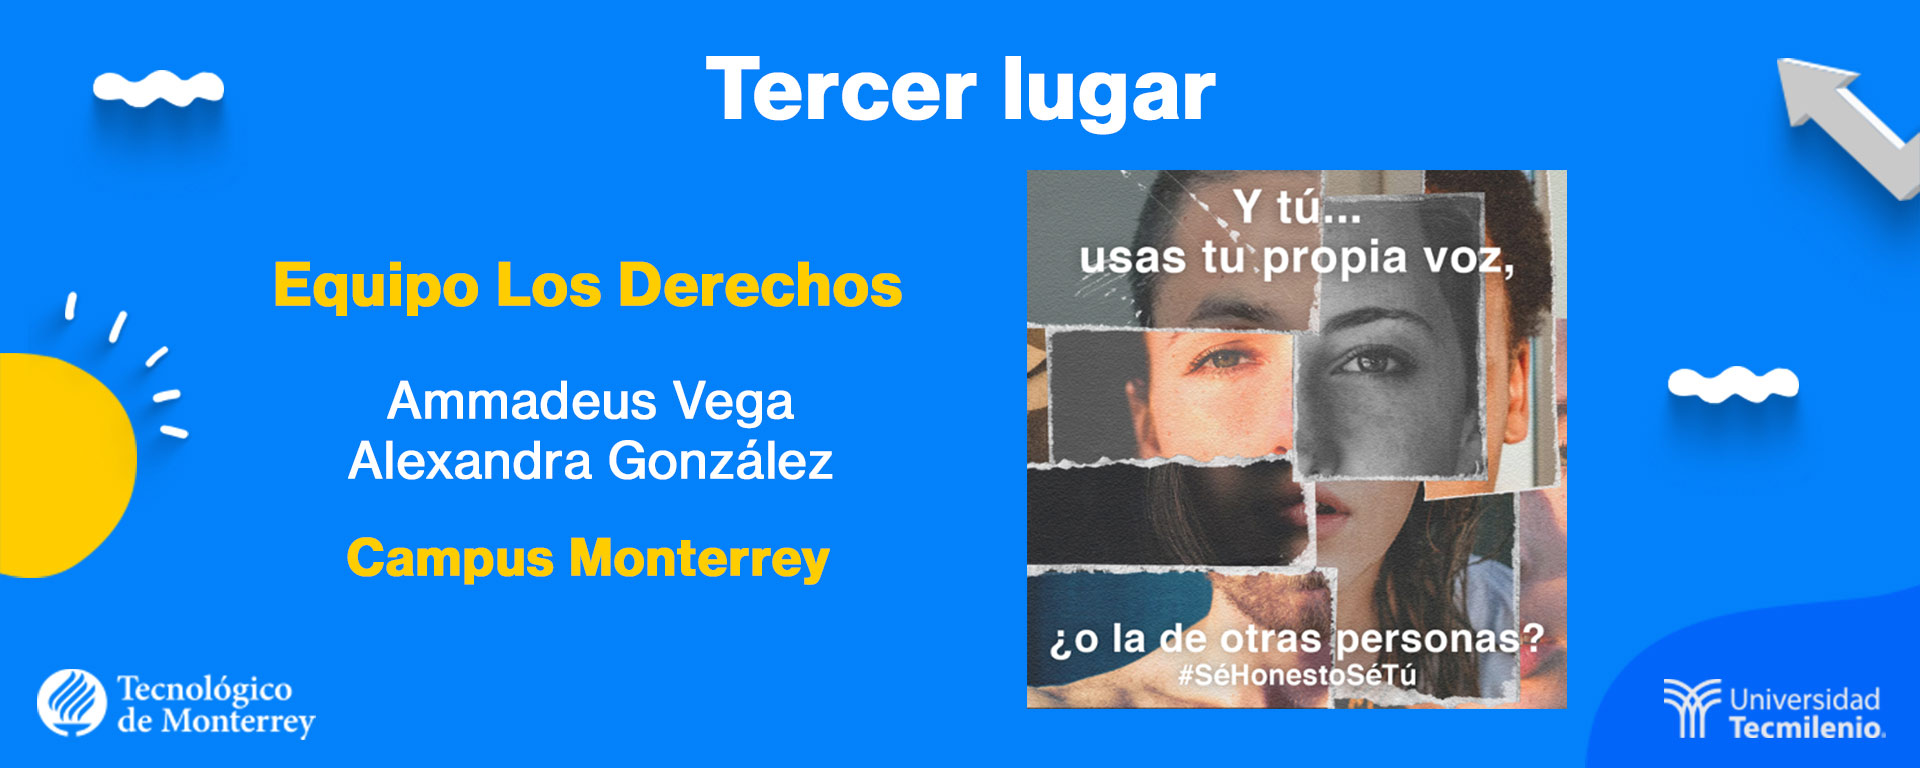 Tercer lugar 1 ganadores del concurso ¡Dale voz a la integridad académica! del Tec de Monterrey y TecMilenio